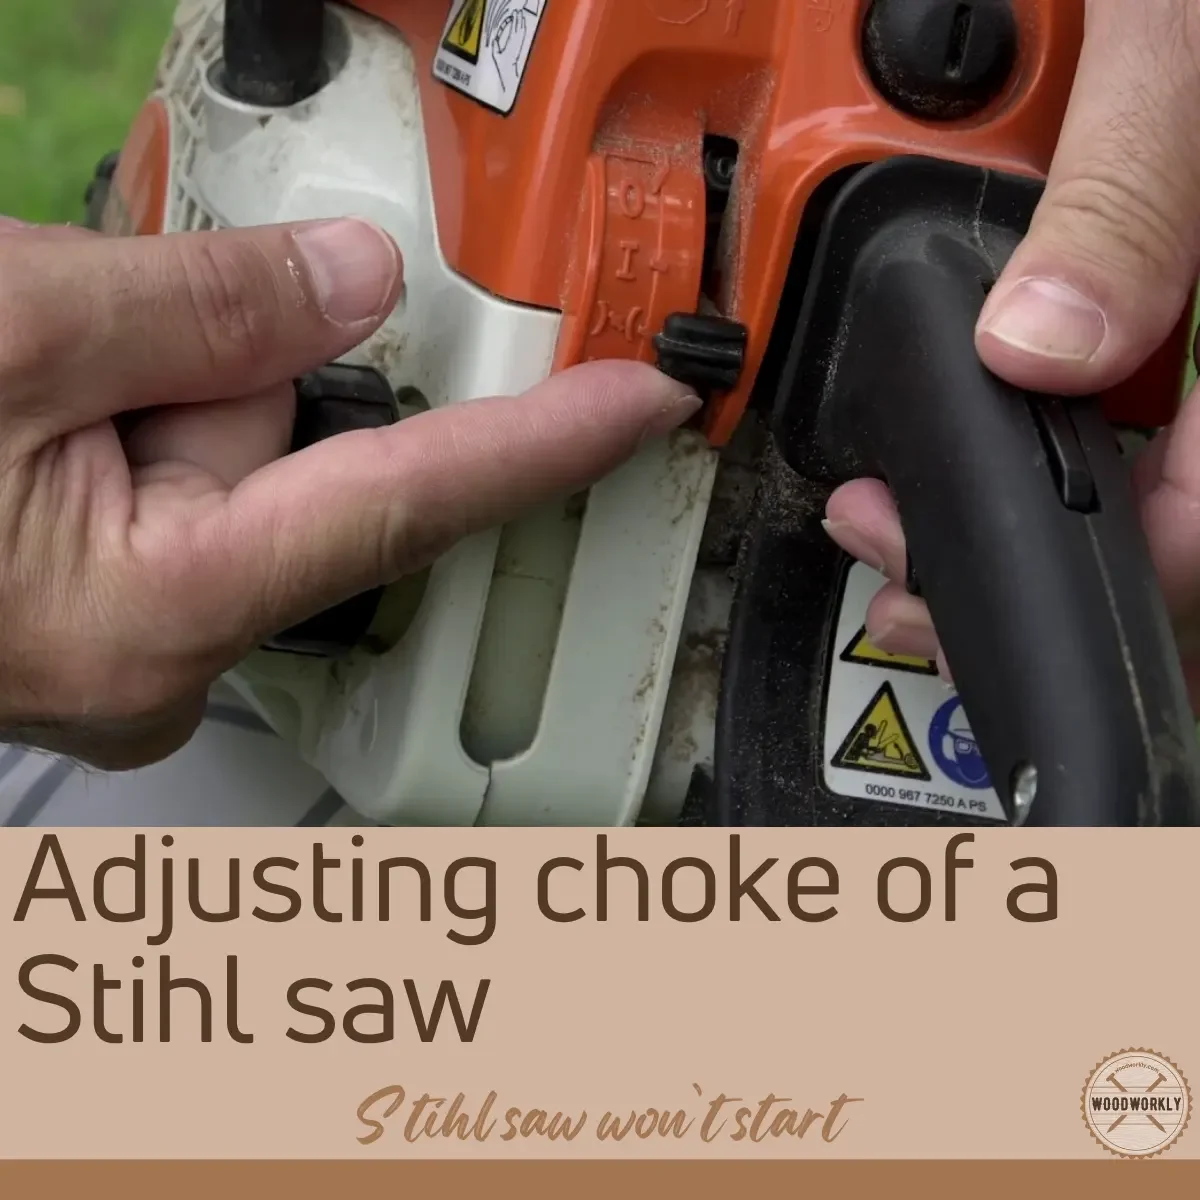 Adjusting choke of a Stihl saw